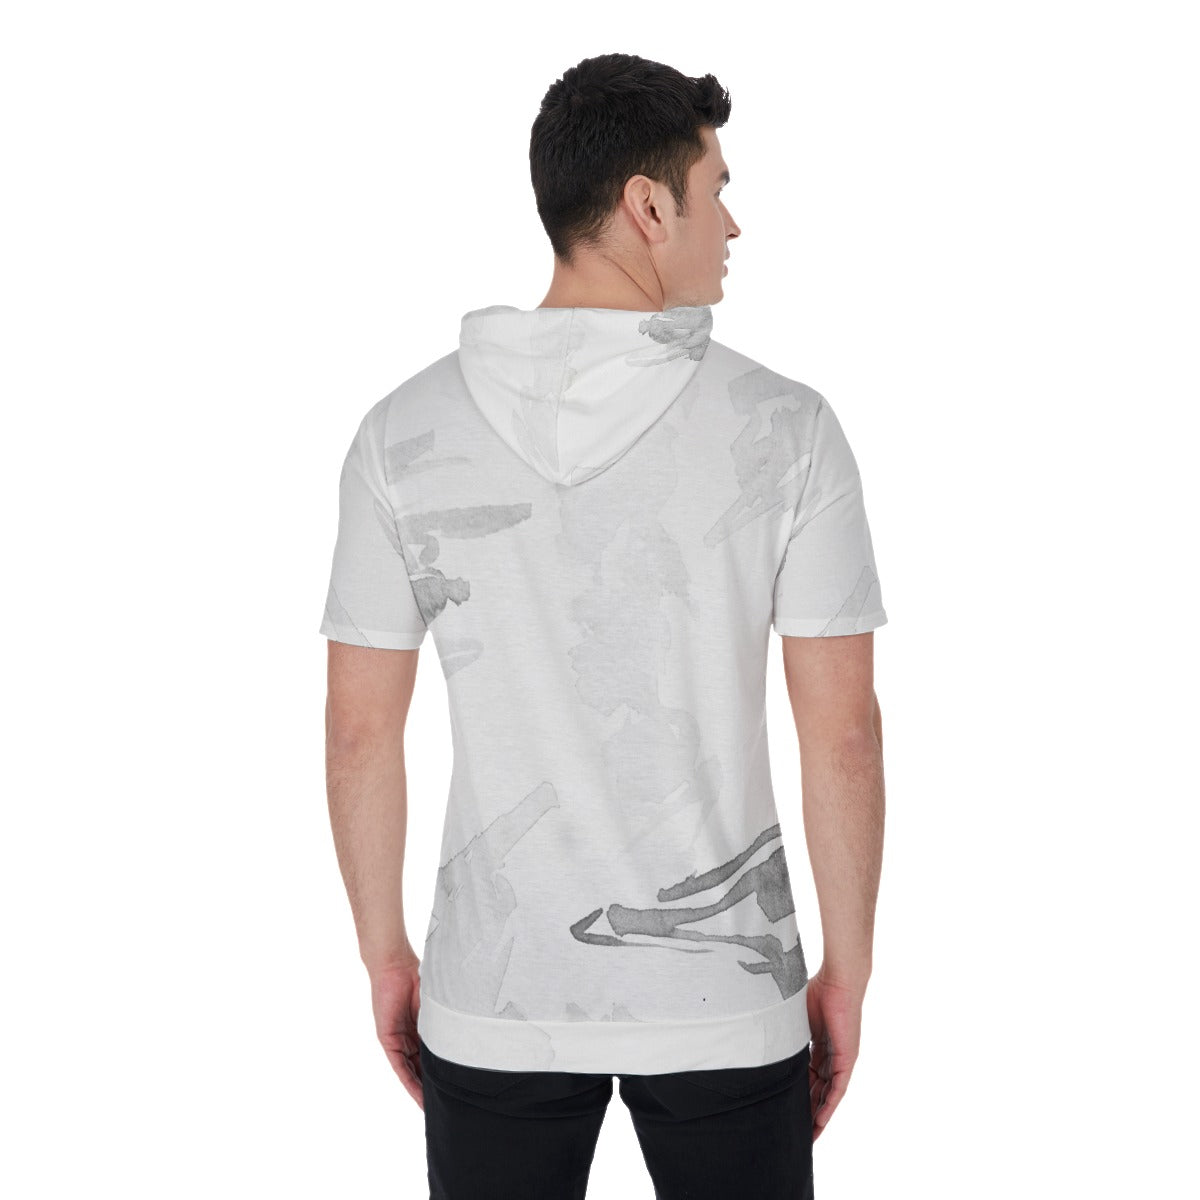 Men's All Over Print Hooded T-shirt